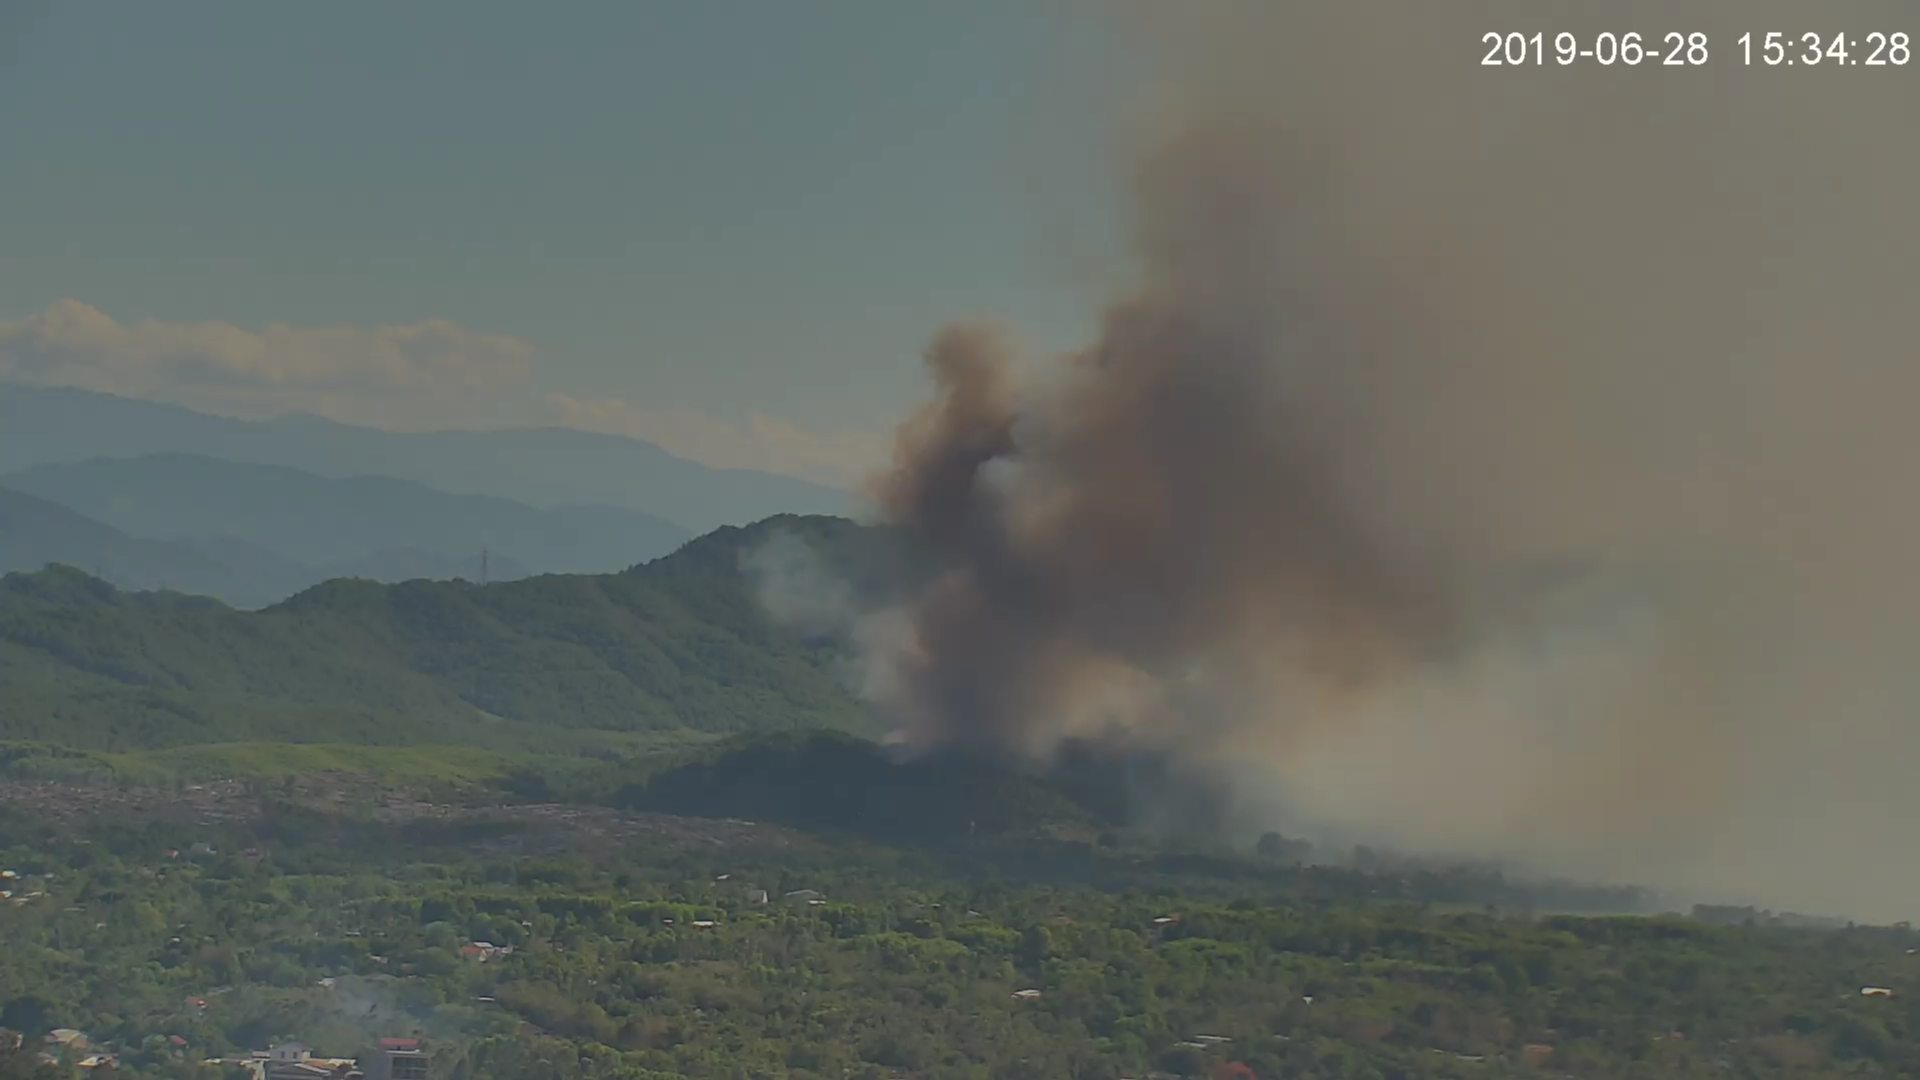 Camera tại Trung tâm IOC hỗ trợ giám sát, theo dõi vị trí, tình hình cháy rừng trong đợt nắng nóng gay gắt trên địa bàn tỉnh Thừa Thiên Huế trong những tháng vừa qua | Ảnh: IOC